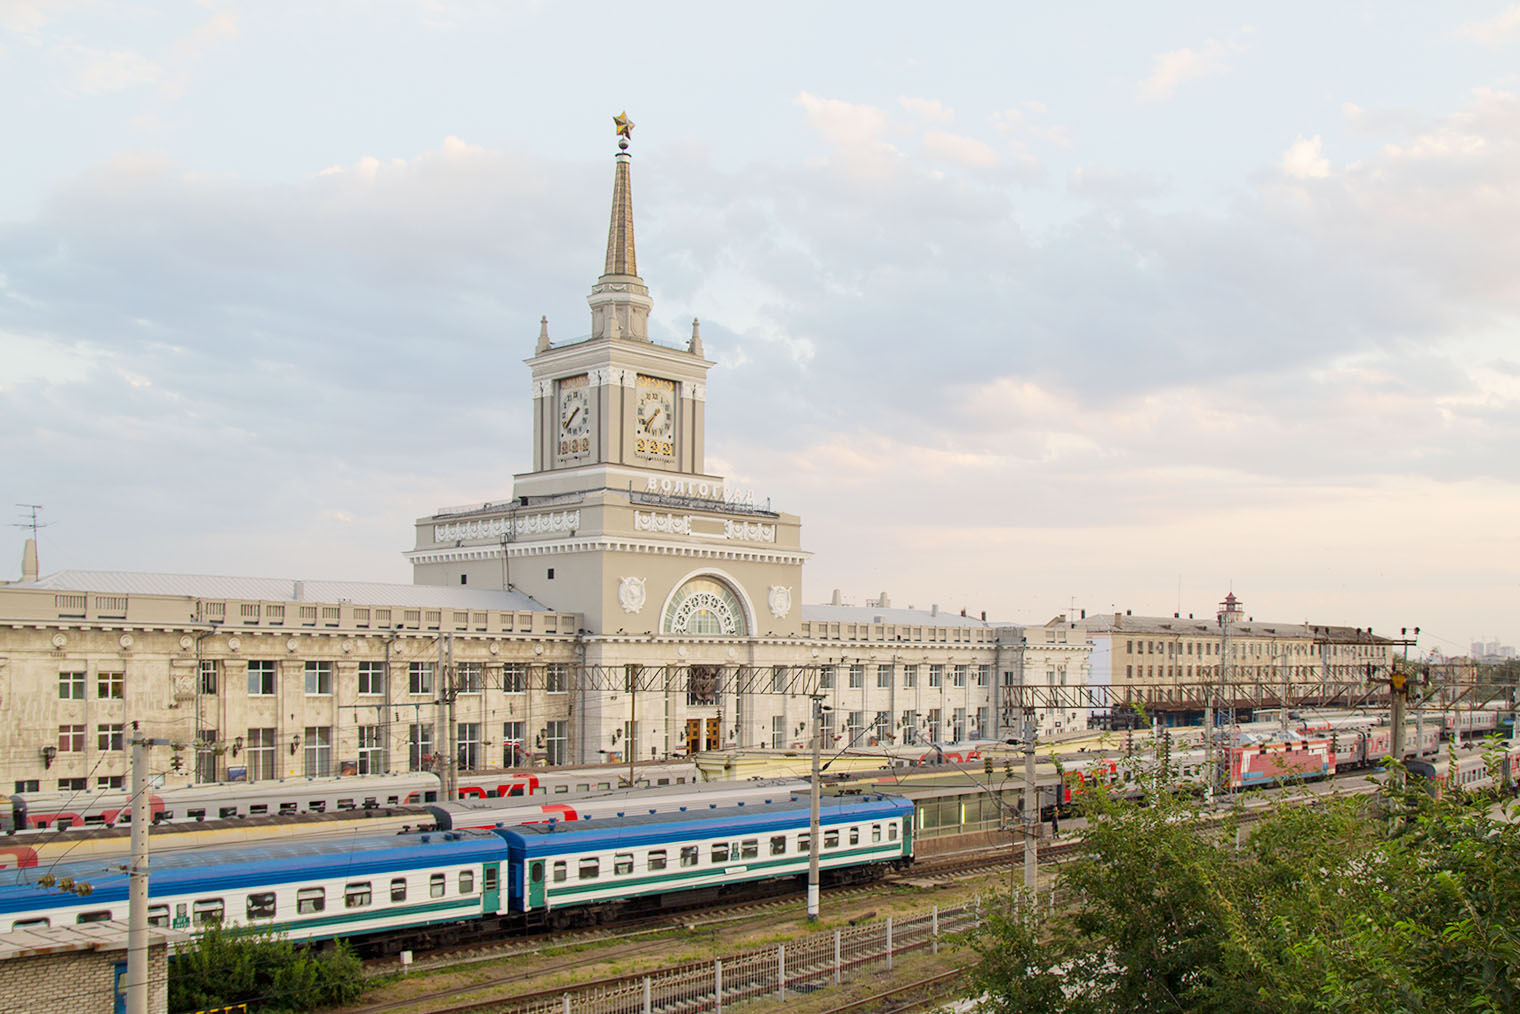 Вокзал в Волгограде — один из самых красивых в России. Фотография: Bayurov Alexander / Shutterstock / FOTODOM